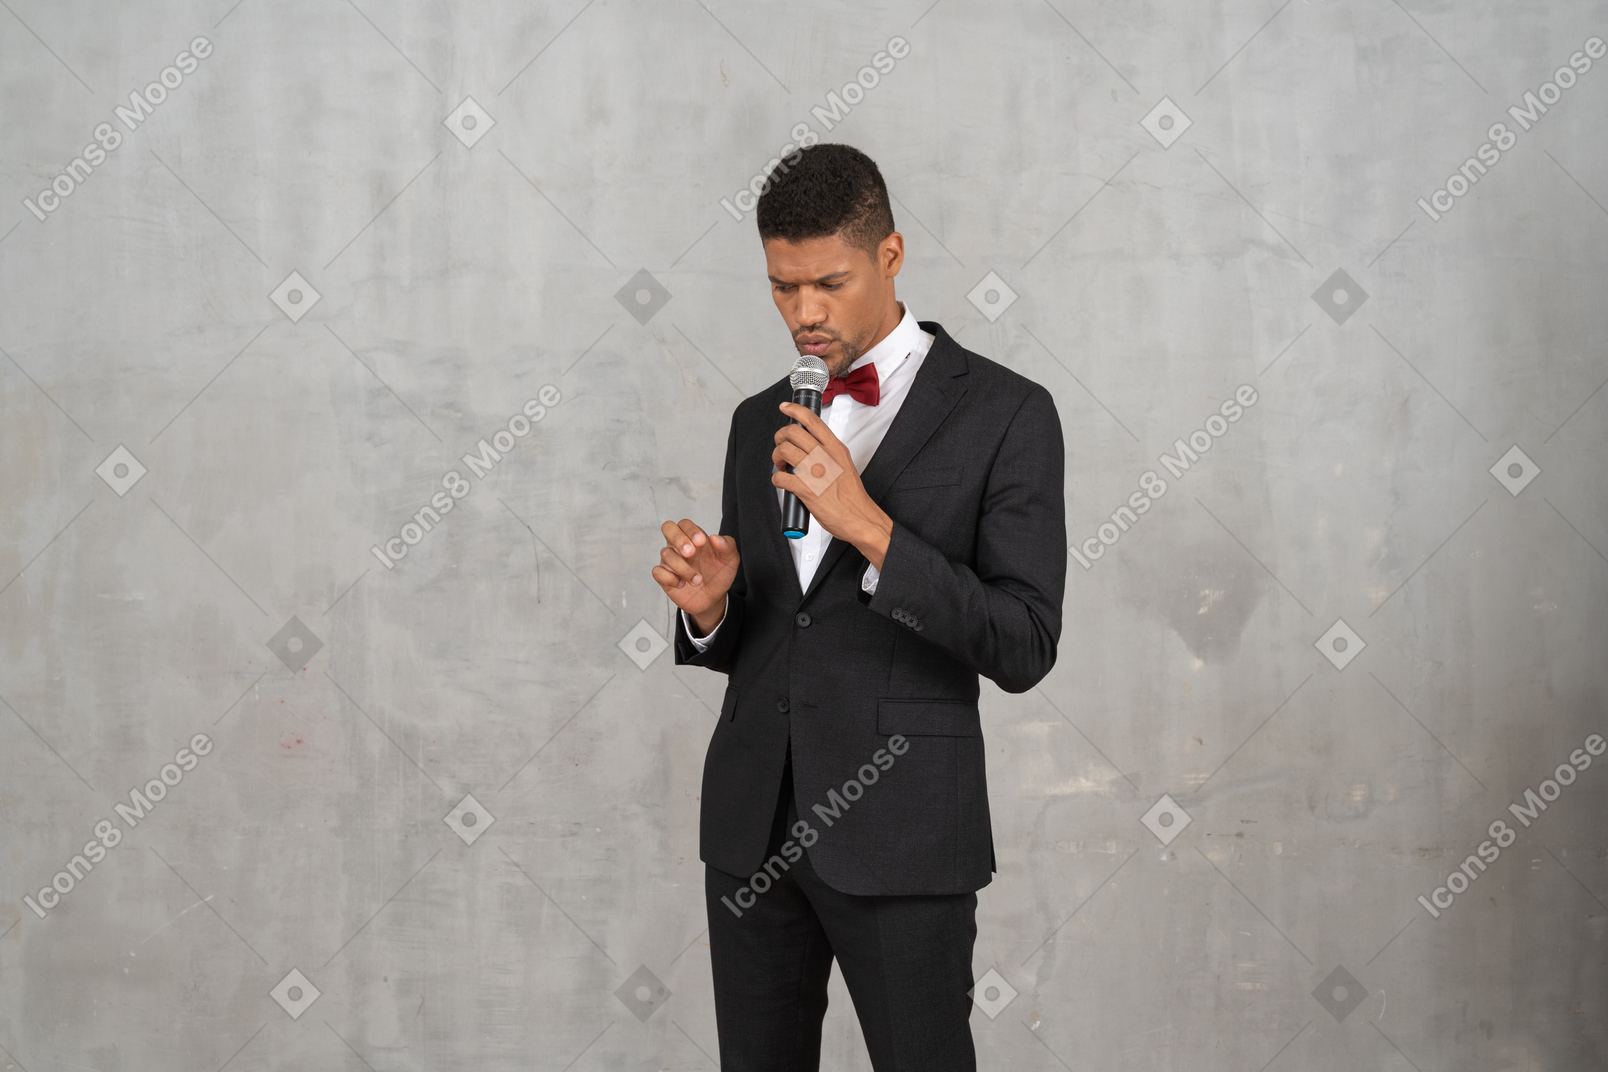 Homem sombrio de terno preto segurando um microfone